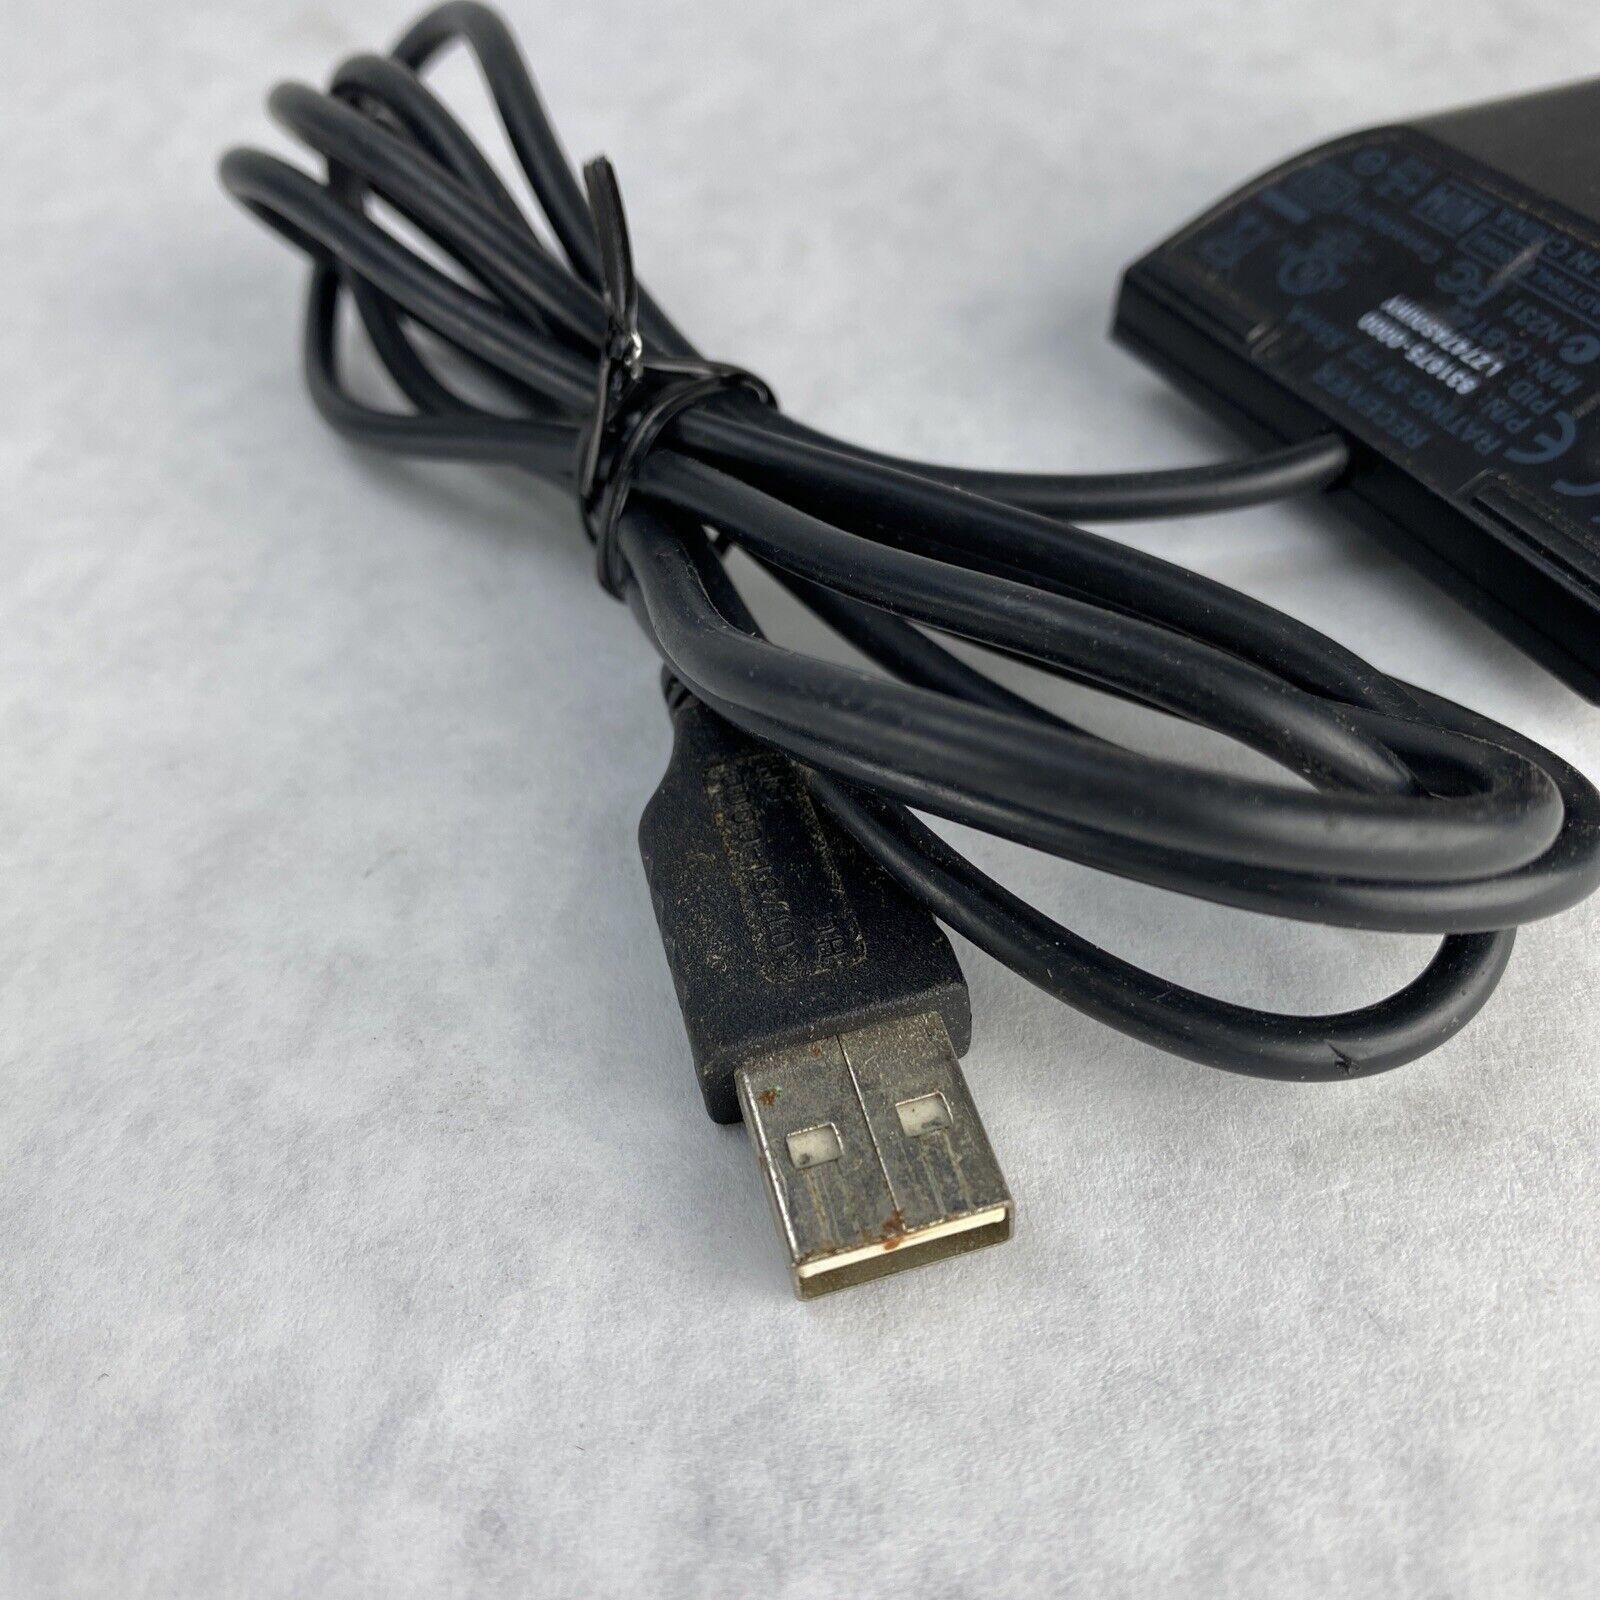 boliger vinkel prins Logitech 831675-0000 C-BT44 USB Wireless Keyboard Mouse Receiver